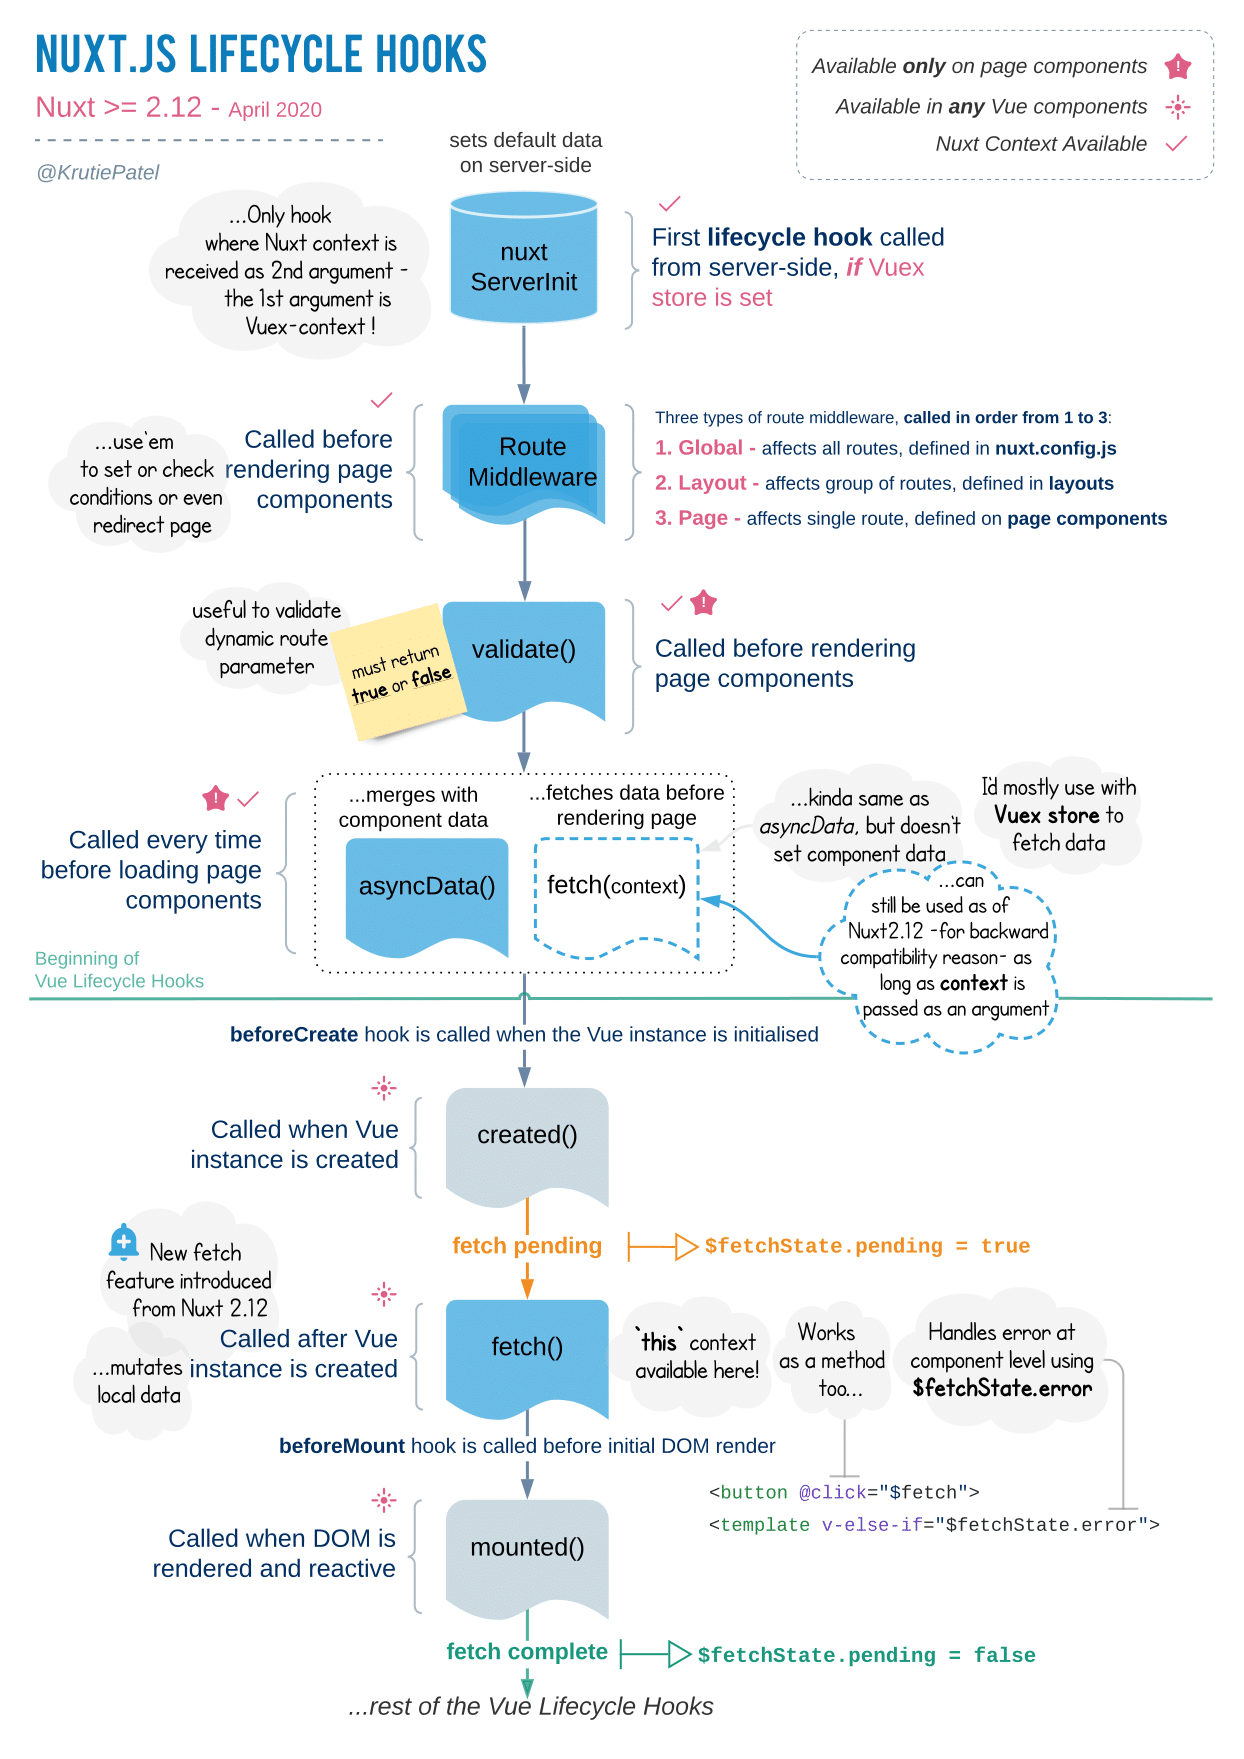 Un aperçu des hooks du cycle de vie de Nuxt.js.